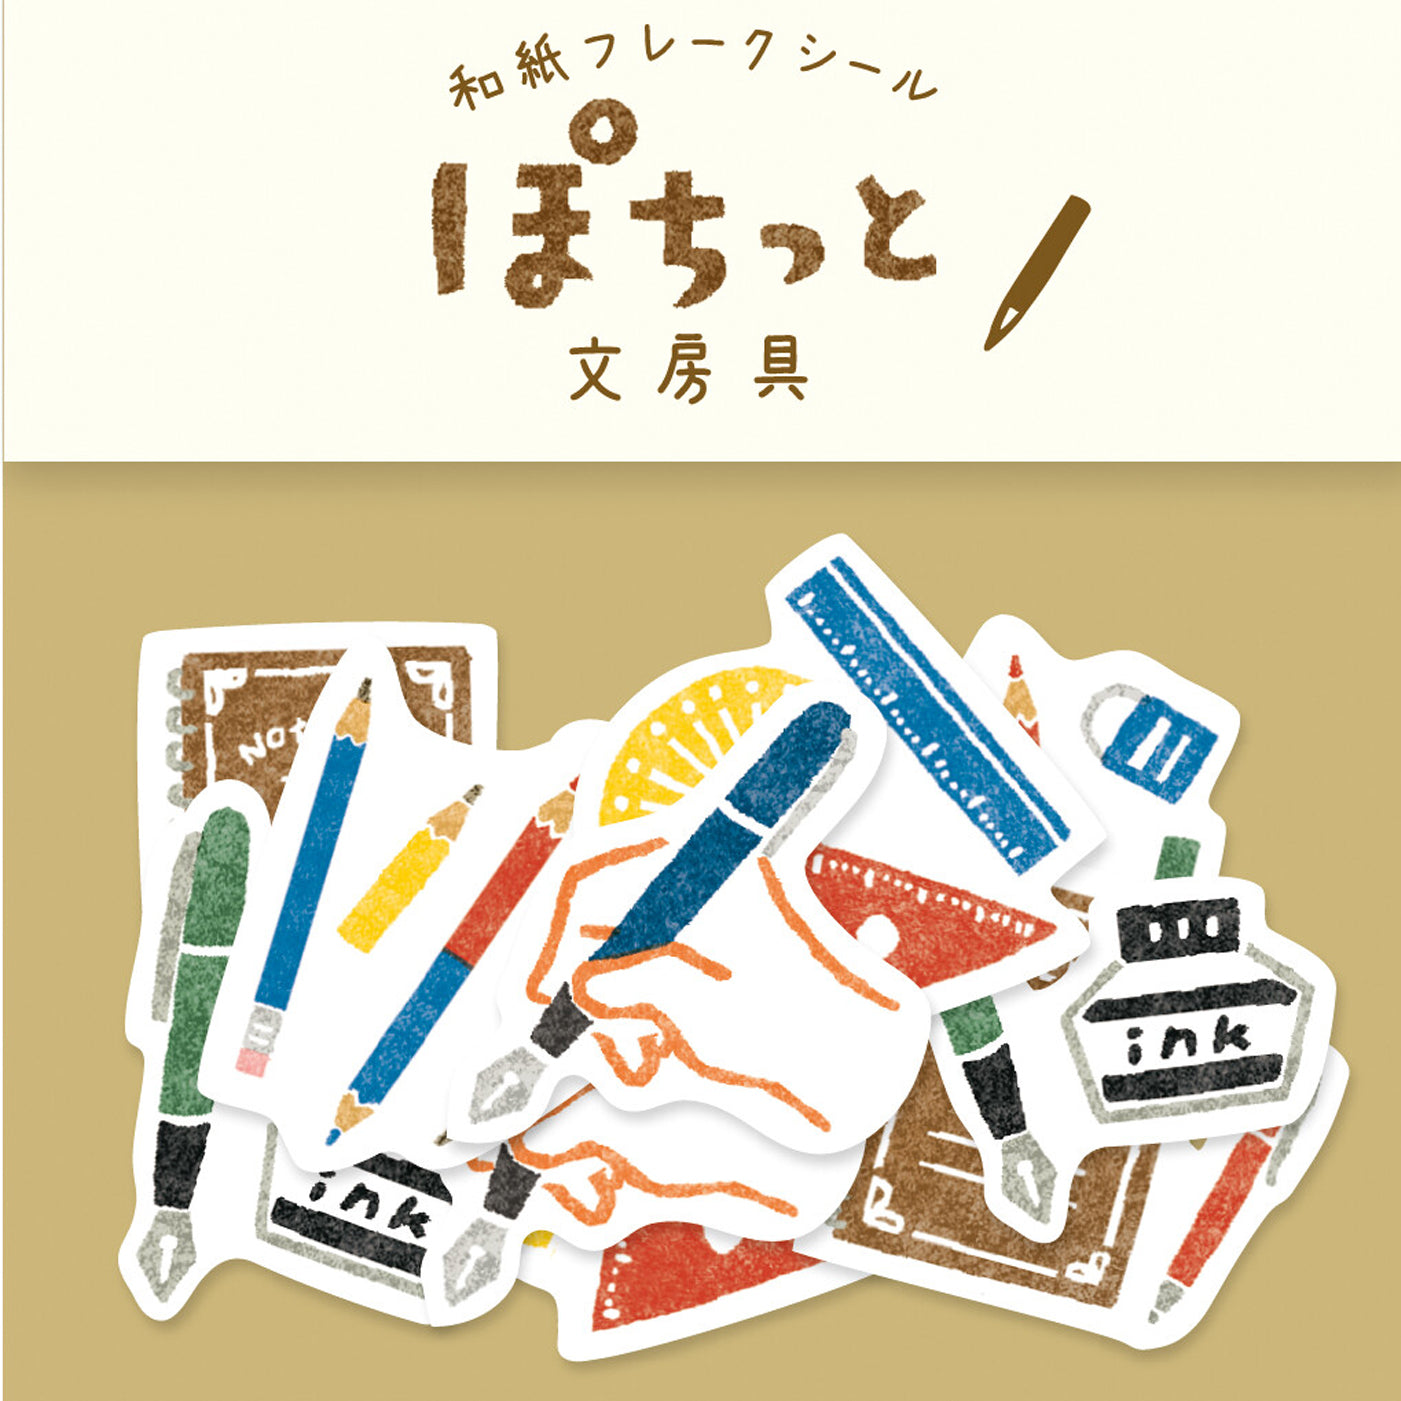 Aesthetic Washi Flake Stickers, Stationery